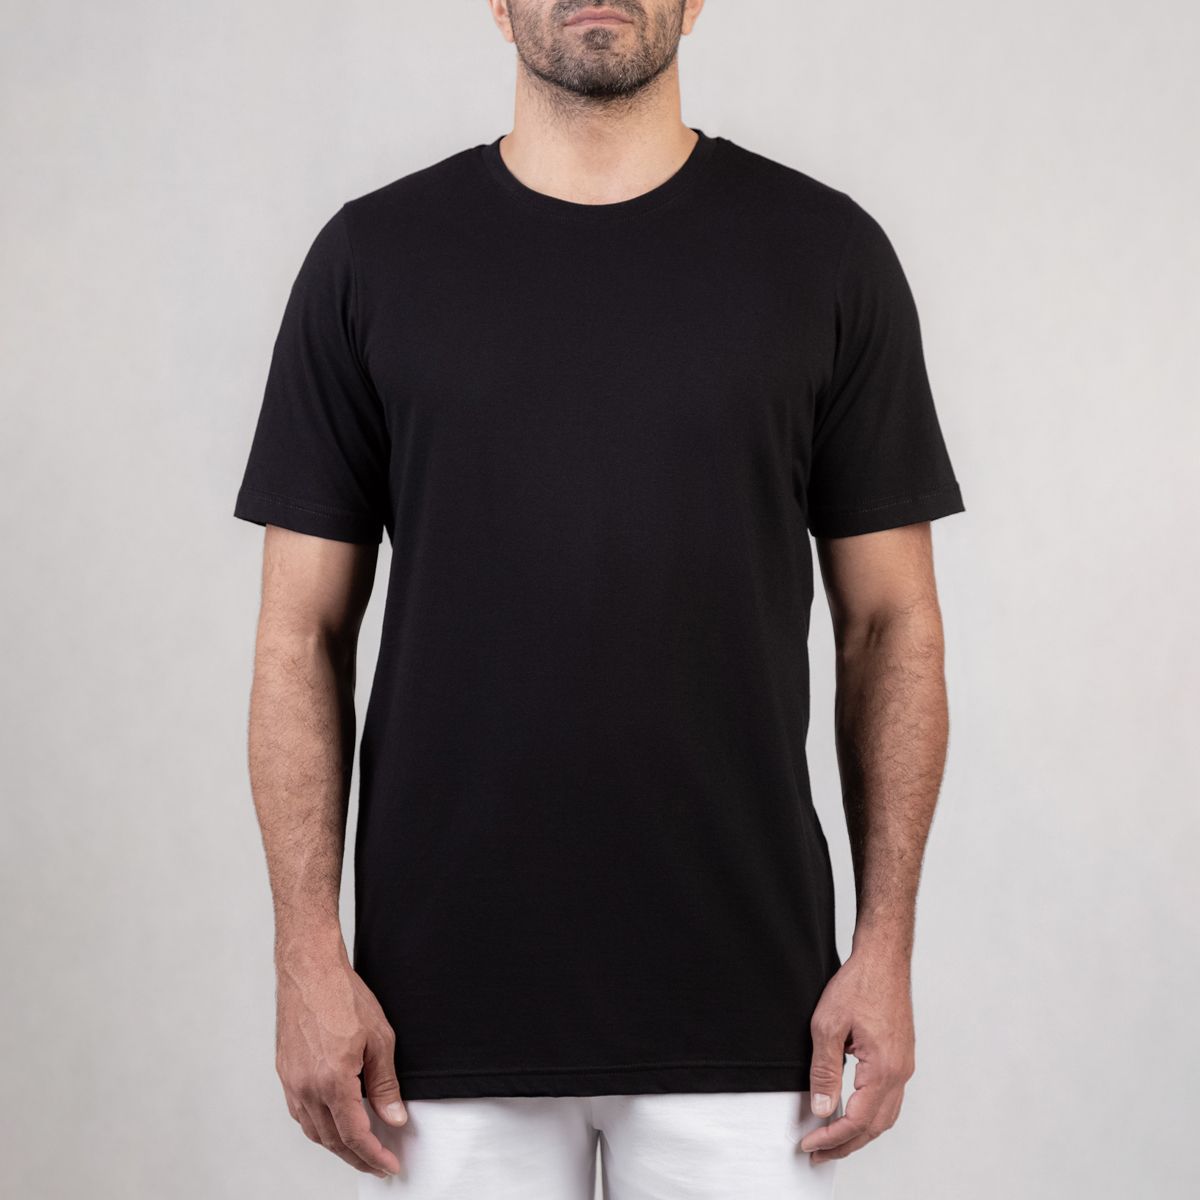 تی شرت ورزشی مردانه مل اند موژ مدل M07782-001 -  - 1